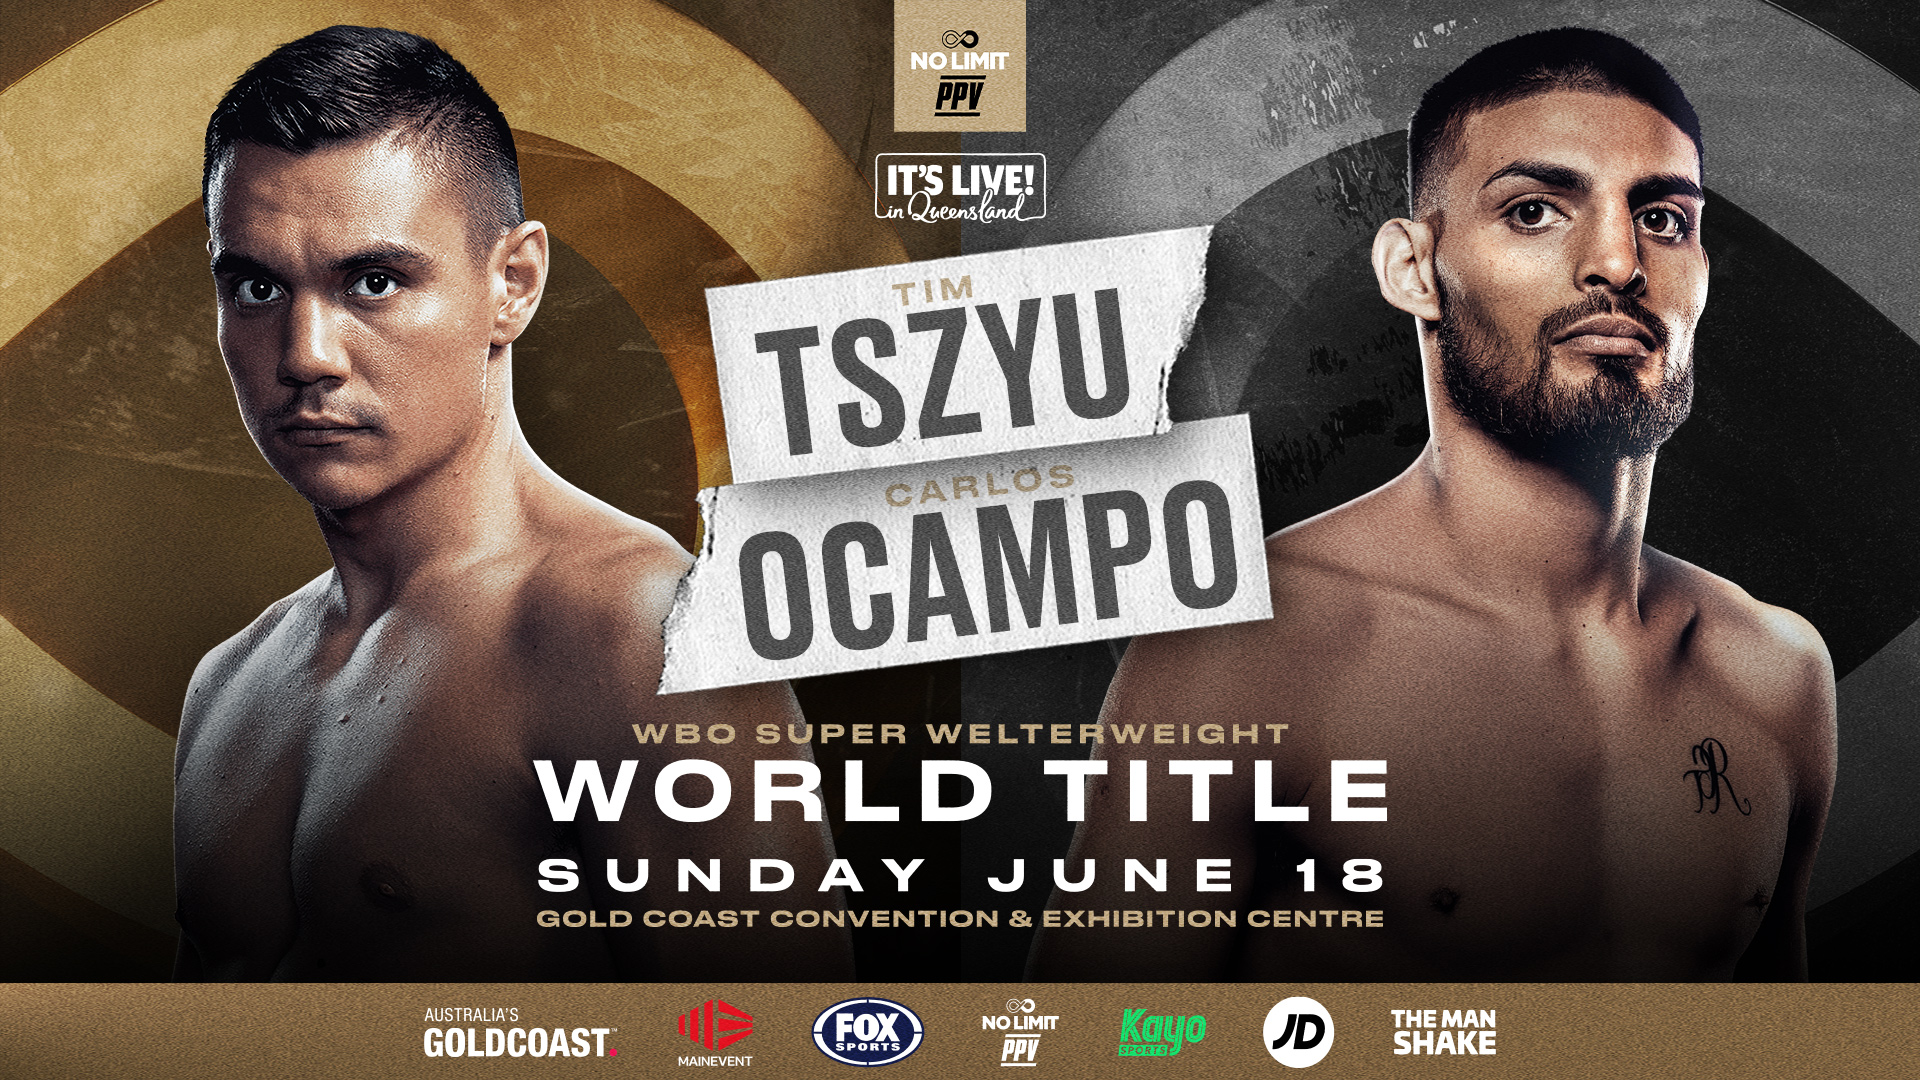 Tim Tszyu vs. Carlos Ocampo: Live Stream, Betting Odds & Fight Card